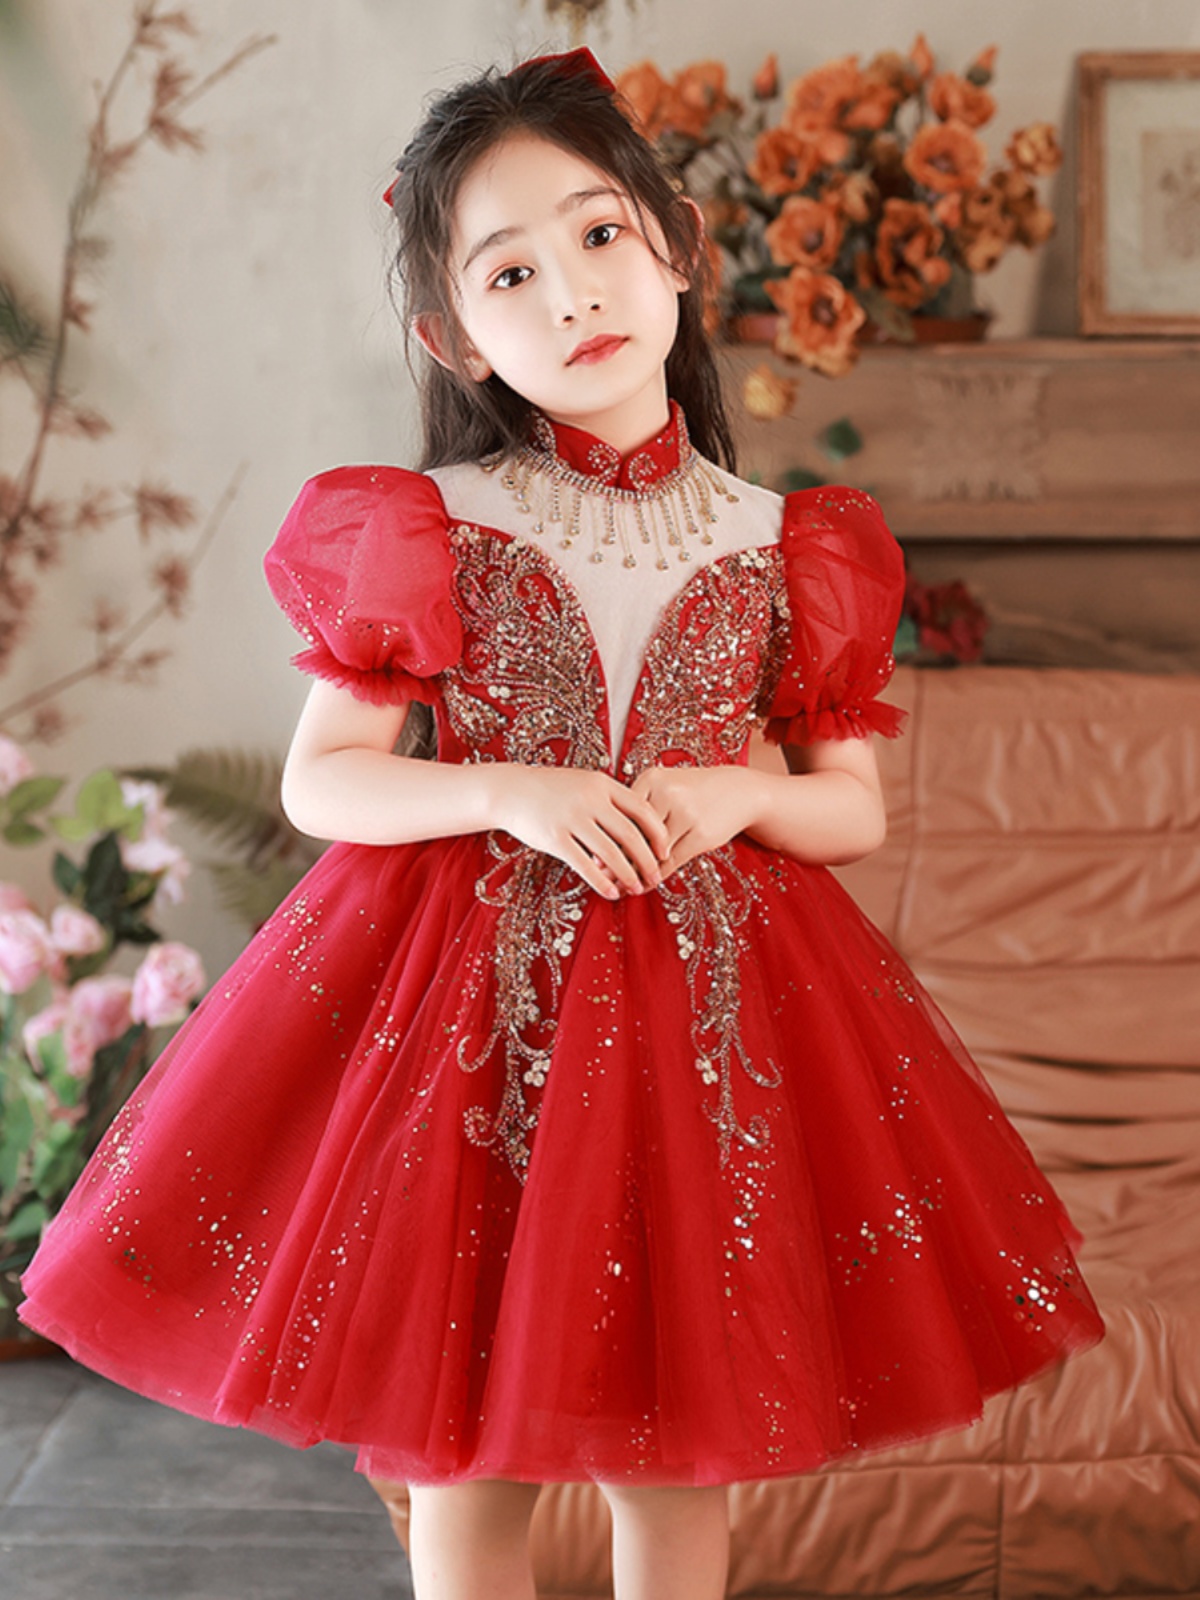 新品儿童礼服公主裙女童演出服钢琴演奏表演礼服裙红色小主持人蓬